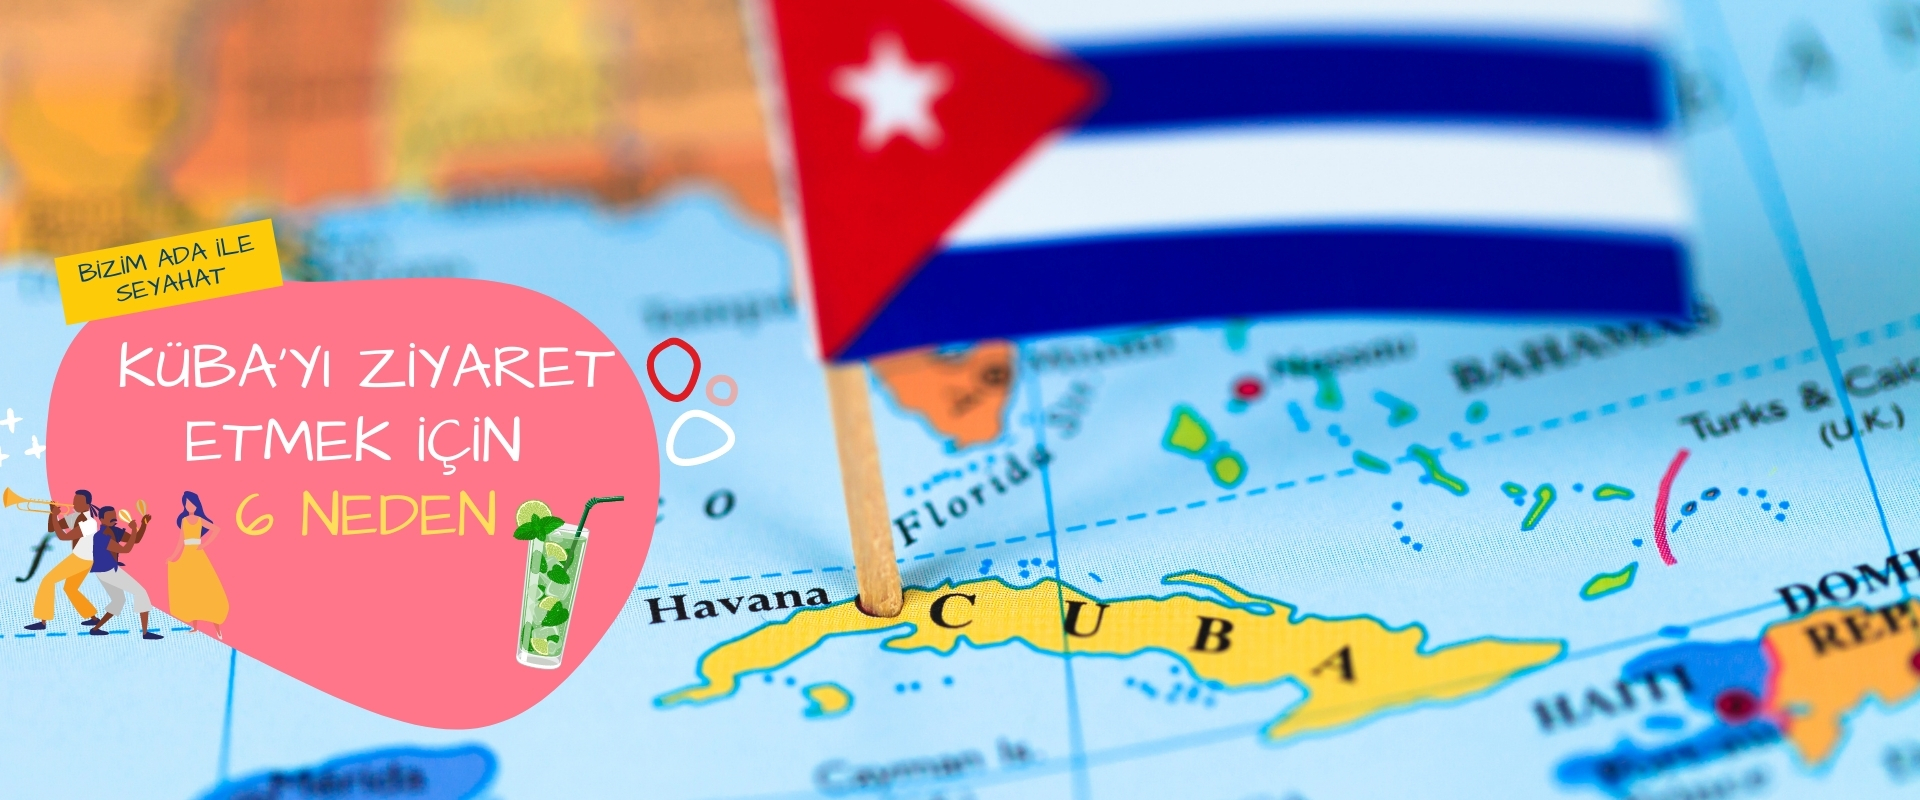 Küba'yı ziyaret etmek için 6 neden